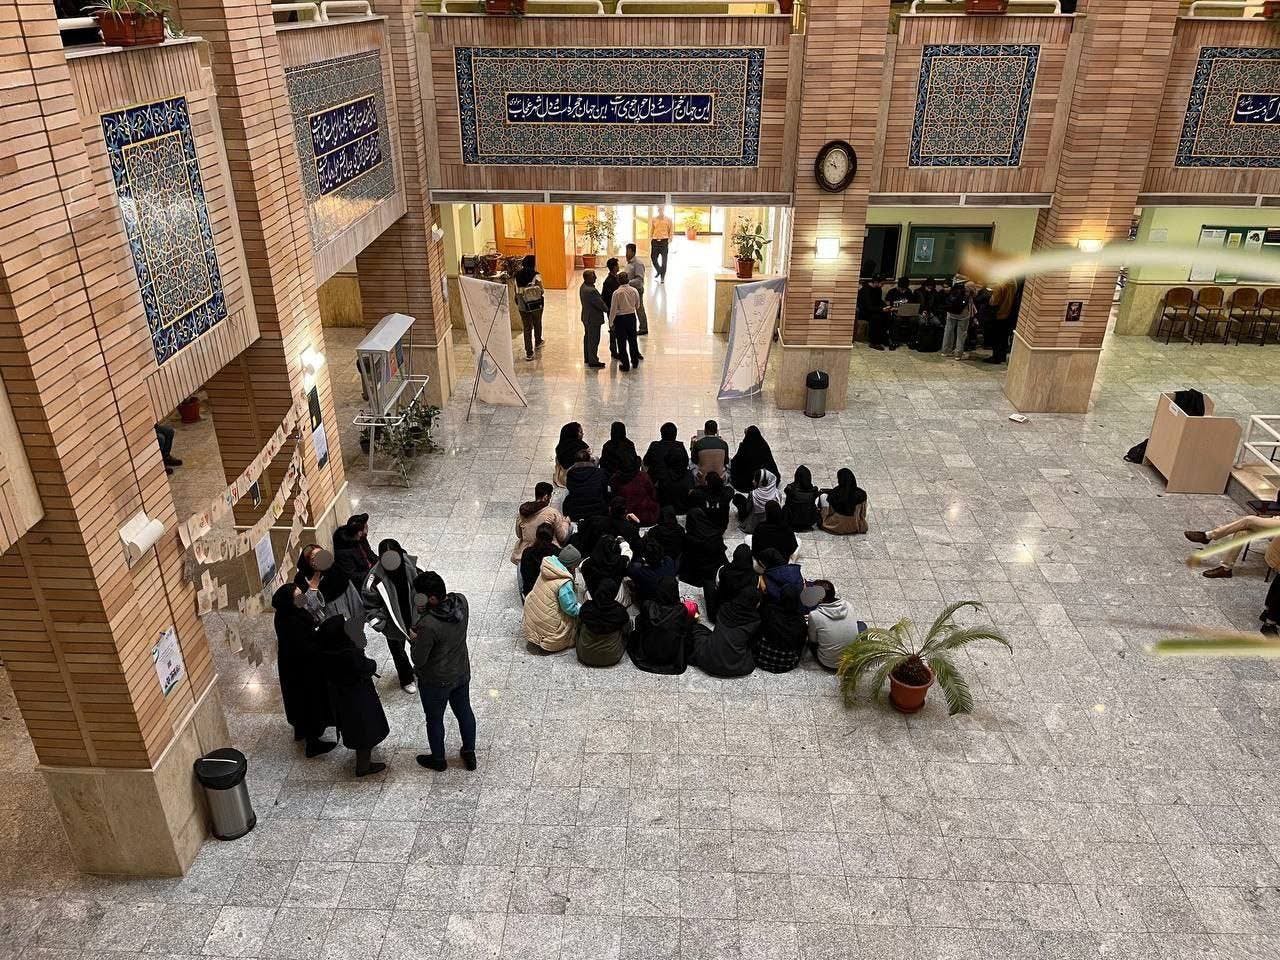 دوربین از بالا طبقه همکف دانشکده روانشناسی دانشگاه بهشتی را نشان می‌دهد که گروهی از دانشجویان در اعتراض به فضای امنیتی دانشگاه کف آن نشسته و تحصن کرده‌اند.